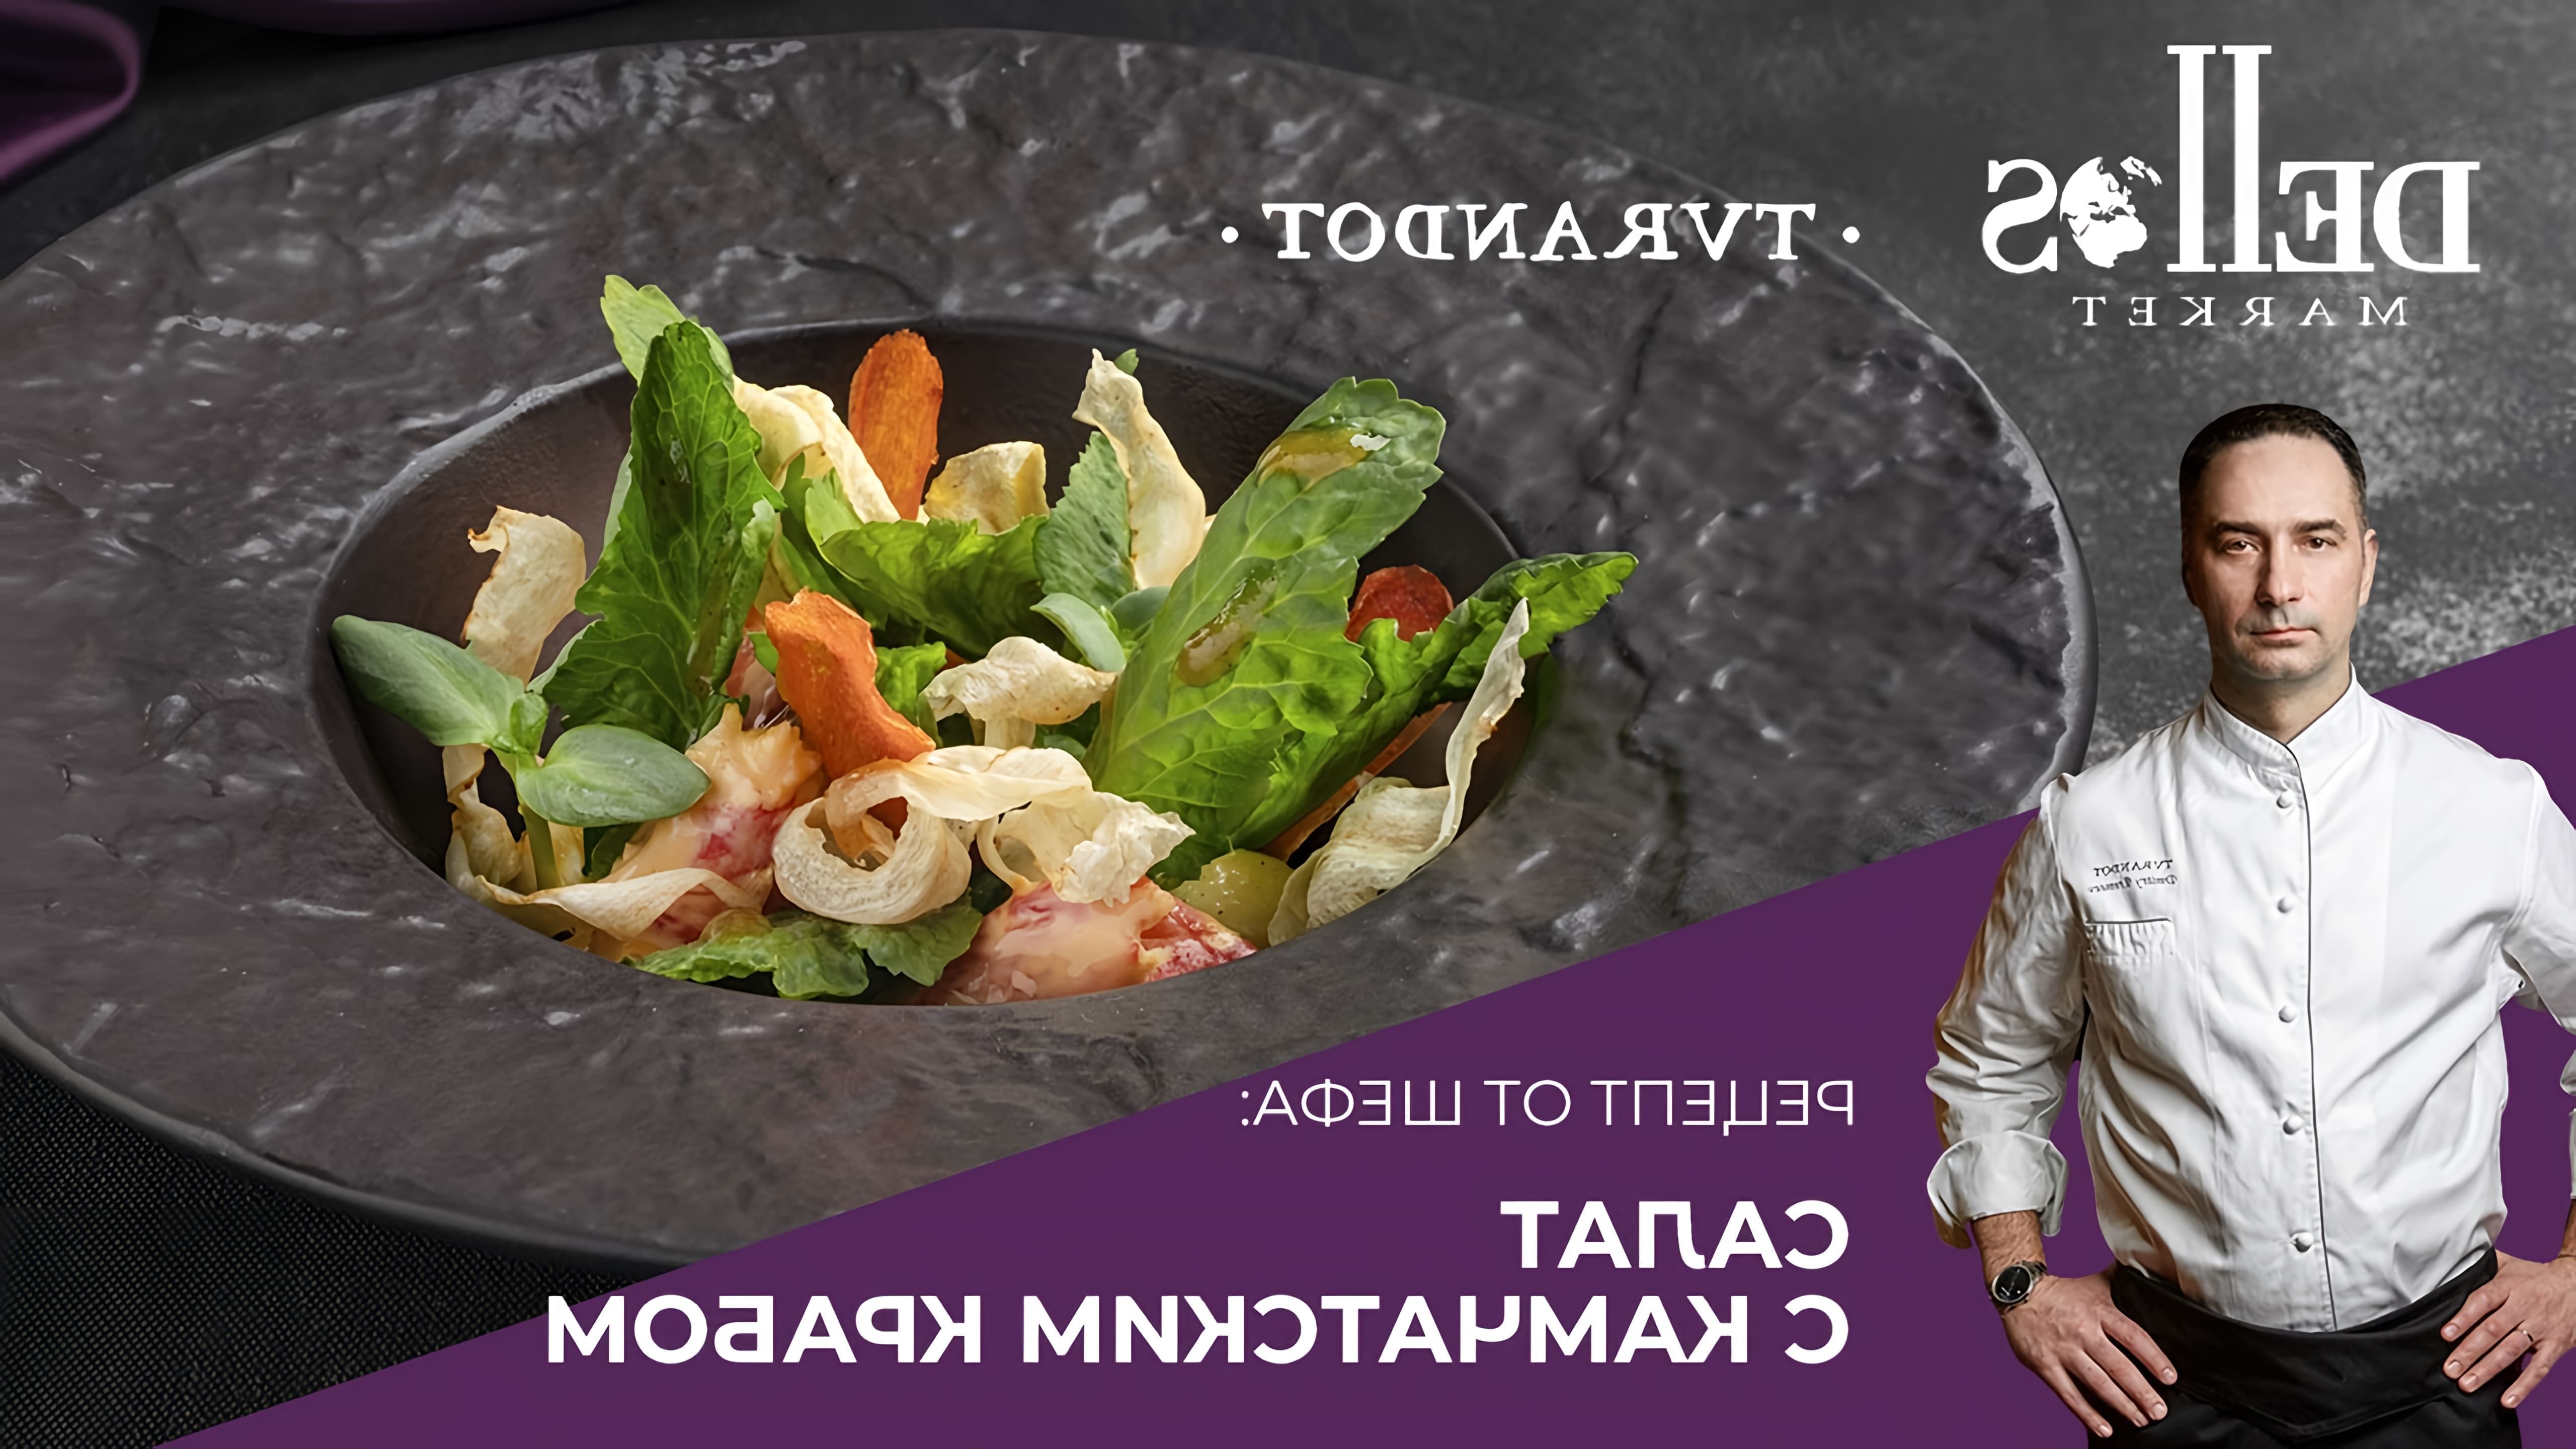 Рецепт салата с камчатским крабом в стиле ресторана «Турандот» - это видео-ролик, который демонстрирует процесс приготовления вкусного и изысканного блюда